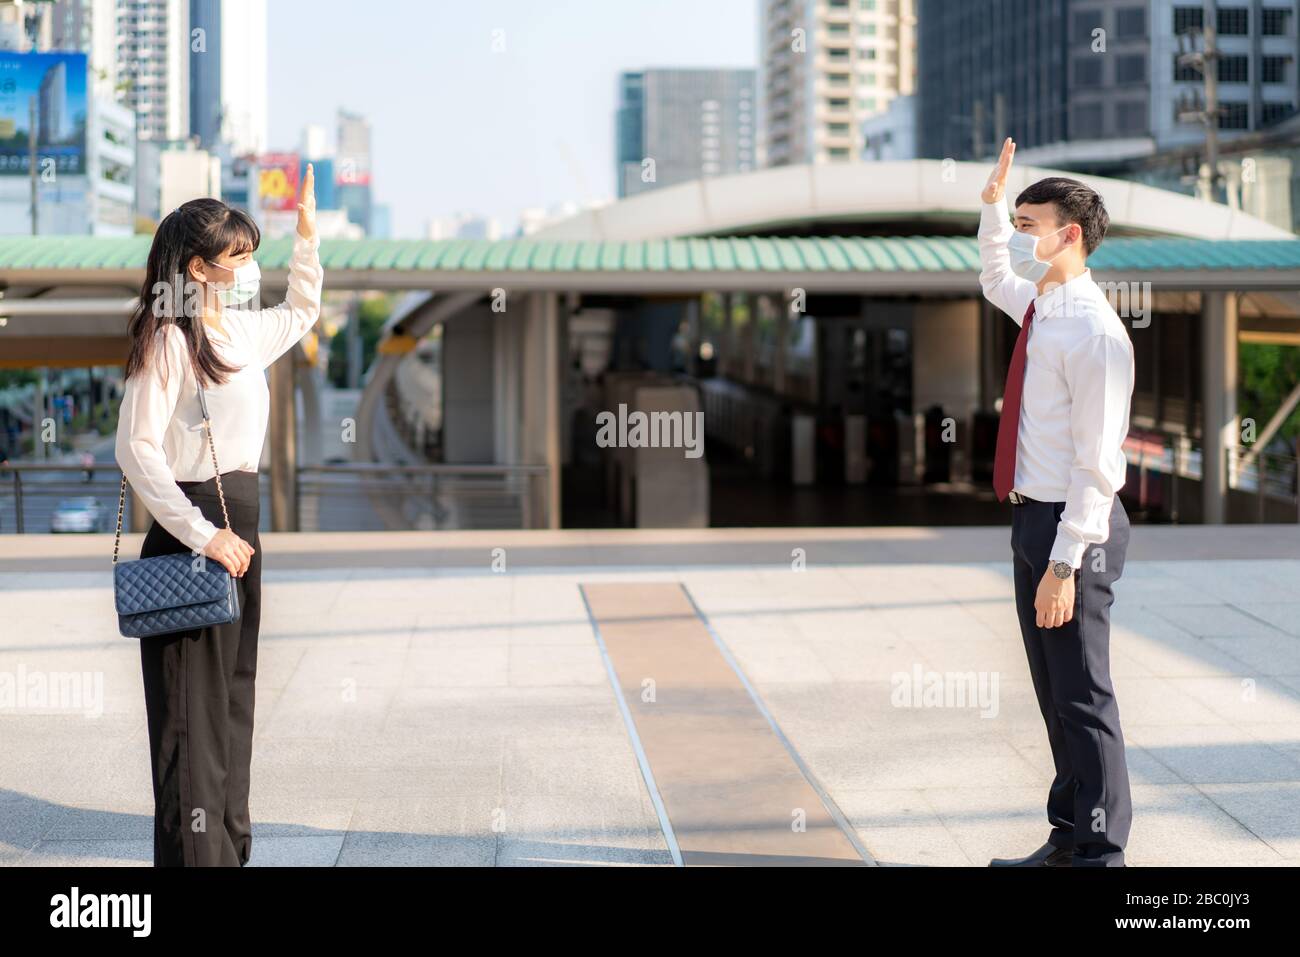 Der asiatische Wirtschaftsmann und die asiatische Frau grüßen und sagen Hallo mit der Geschäftskollegin und tragen Maske Stehabstand von 1 Meter Abstand Schutz vor COVID-19 Stockfoto